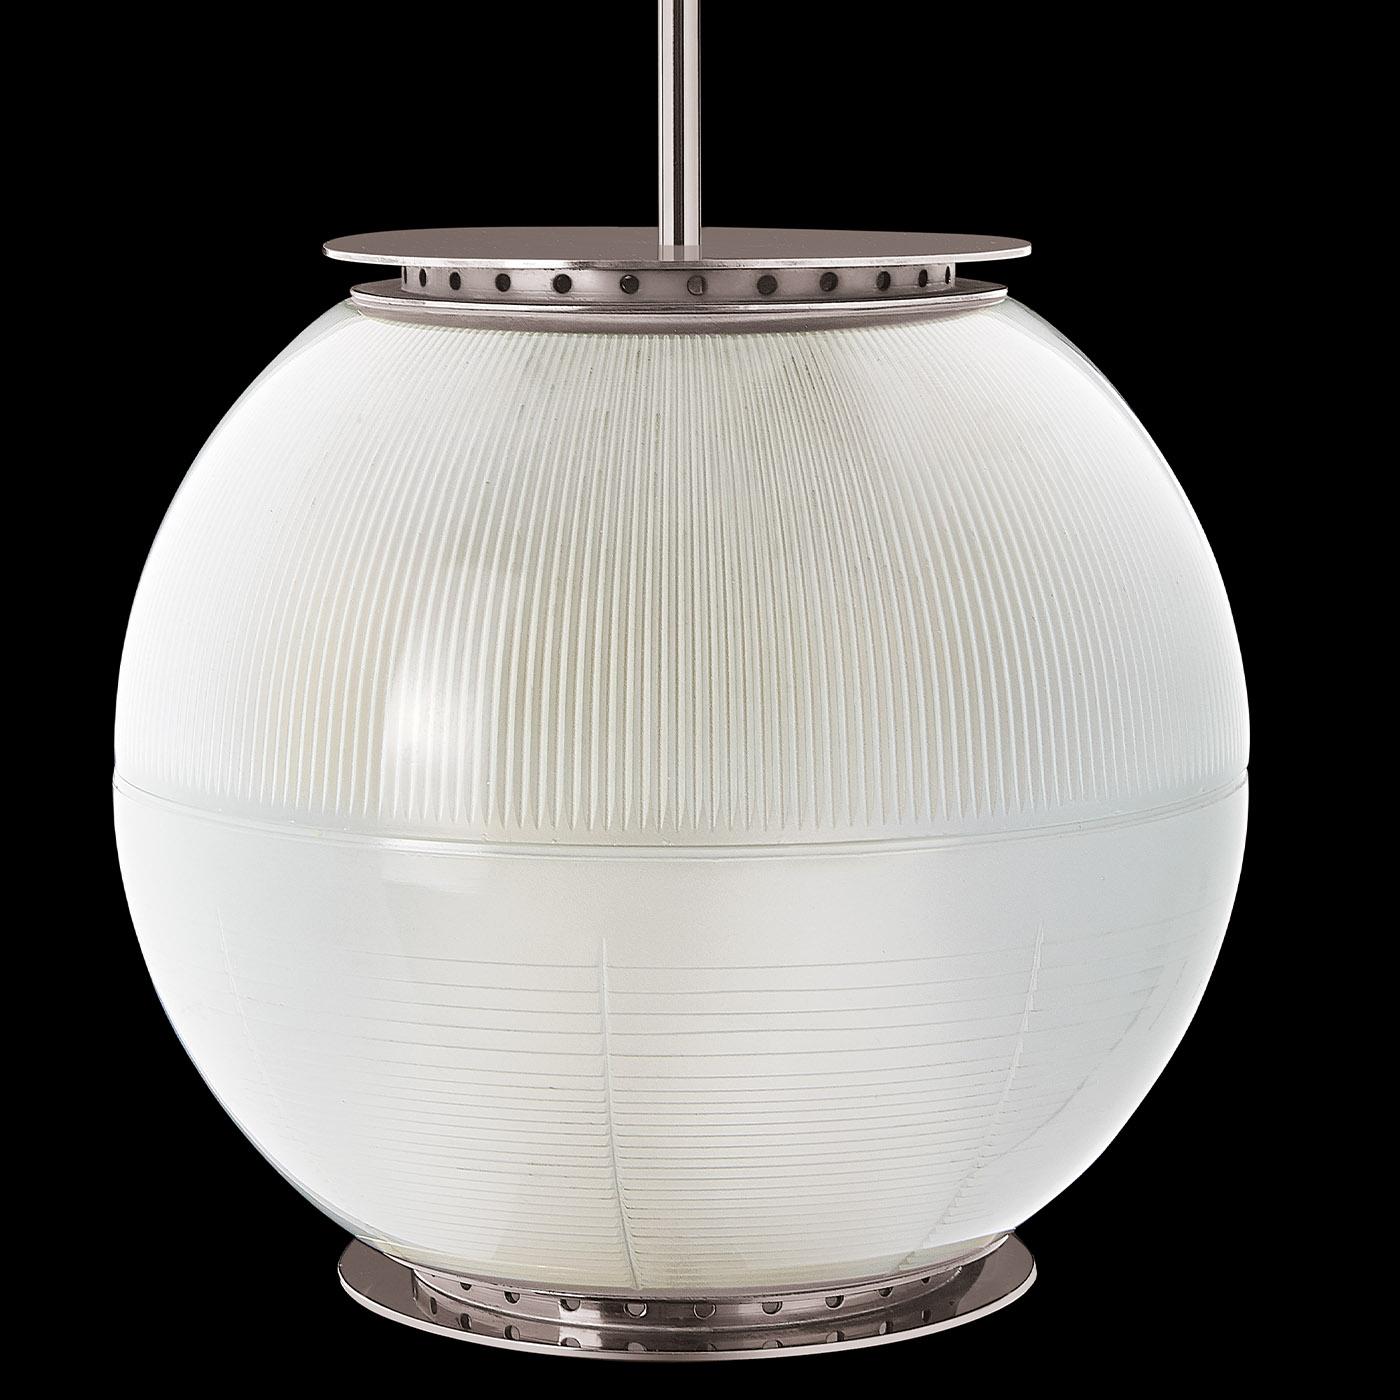 Faisant partie de la série de luminaires Doppio Vetro conçue par Ignazio Gardella et se distinguant par deux abat-jour semi-sphériques en verre imprimé, cette lampe suspendue combine des lignes simples et épurées avec un charme raffiné. Suspendu à